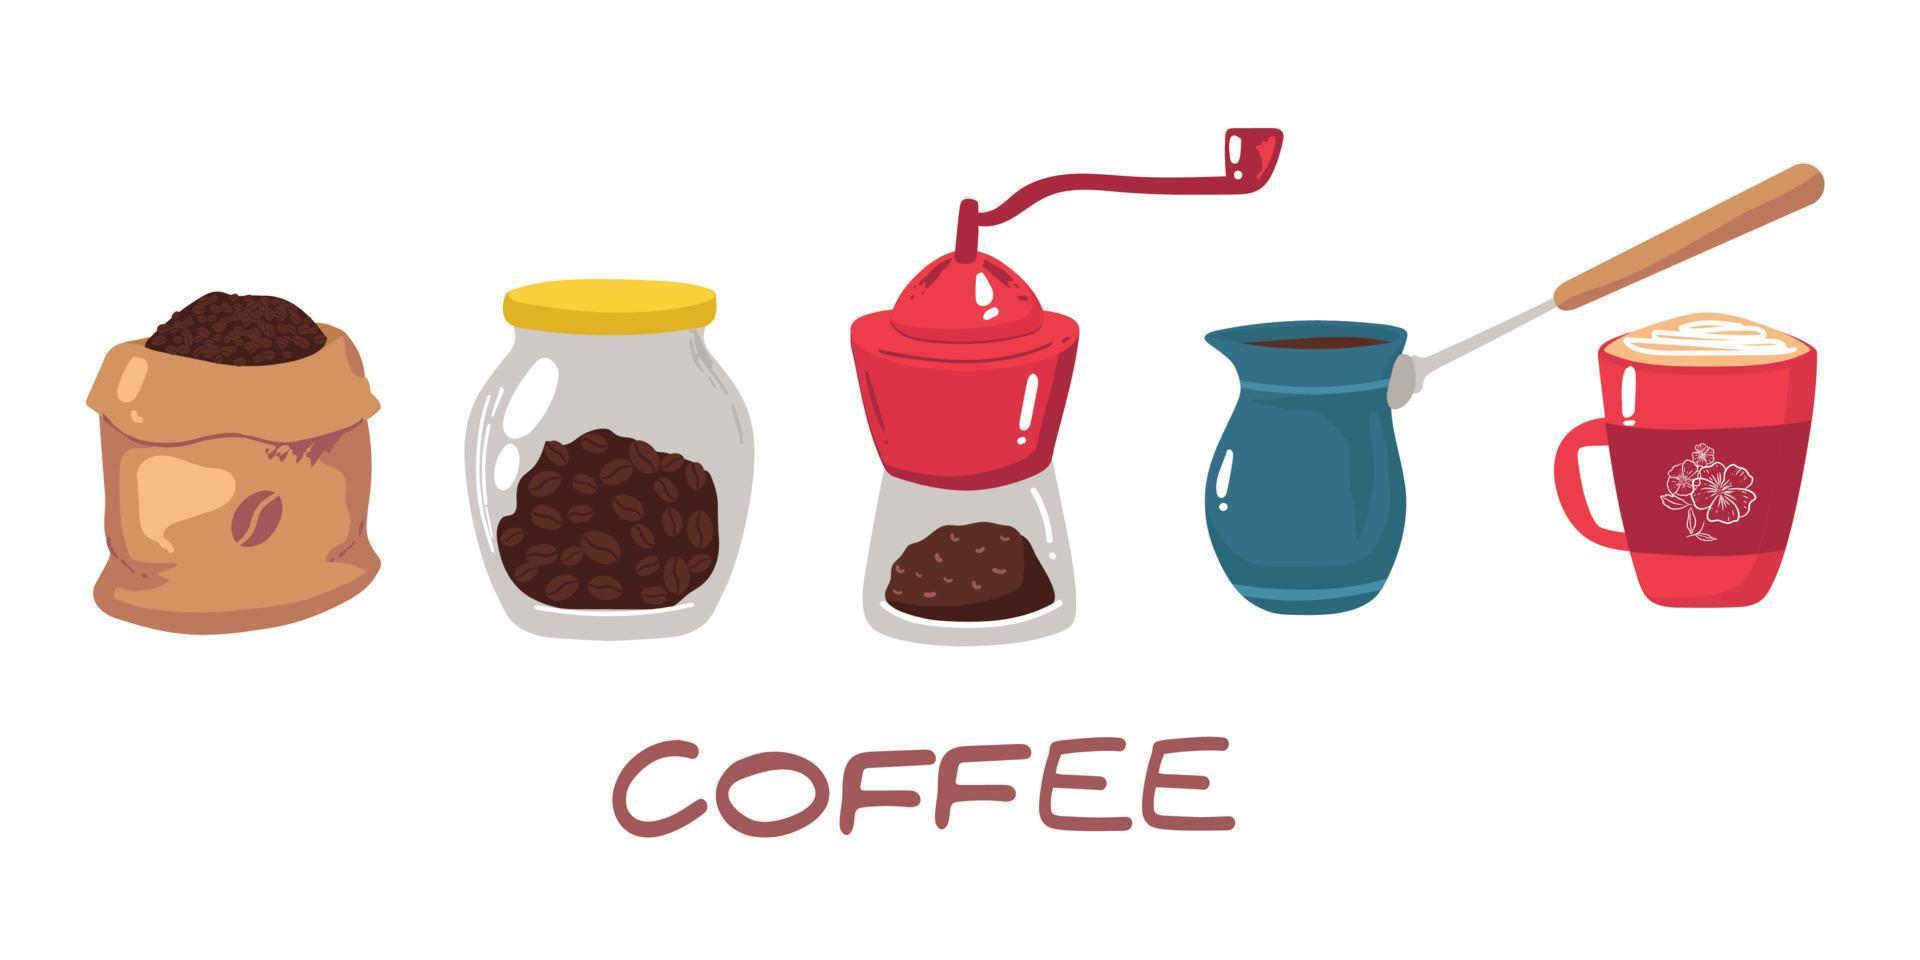 grand ensemble d'icônes dans un style plat. café élégant ensemble d'icônes. café, boissons au café, cafetières et autres appareils et desserts, vecteur